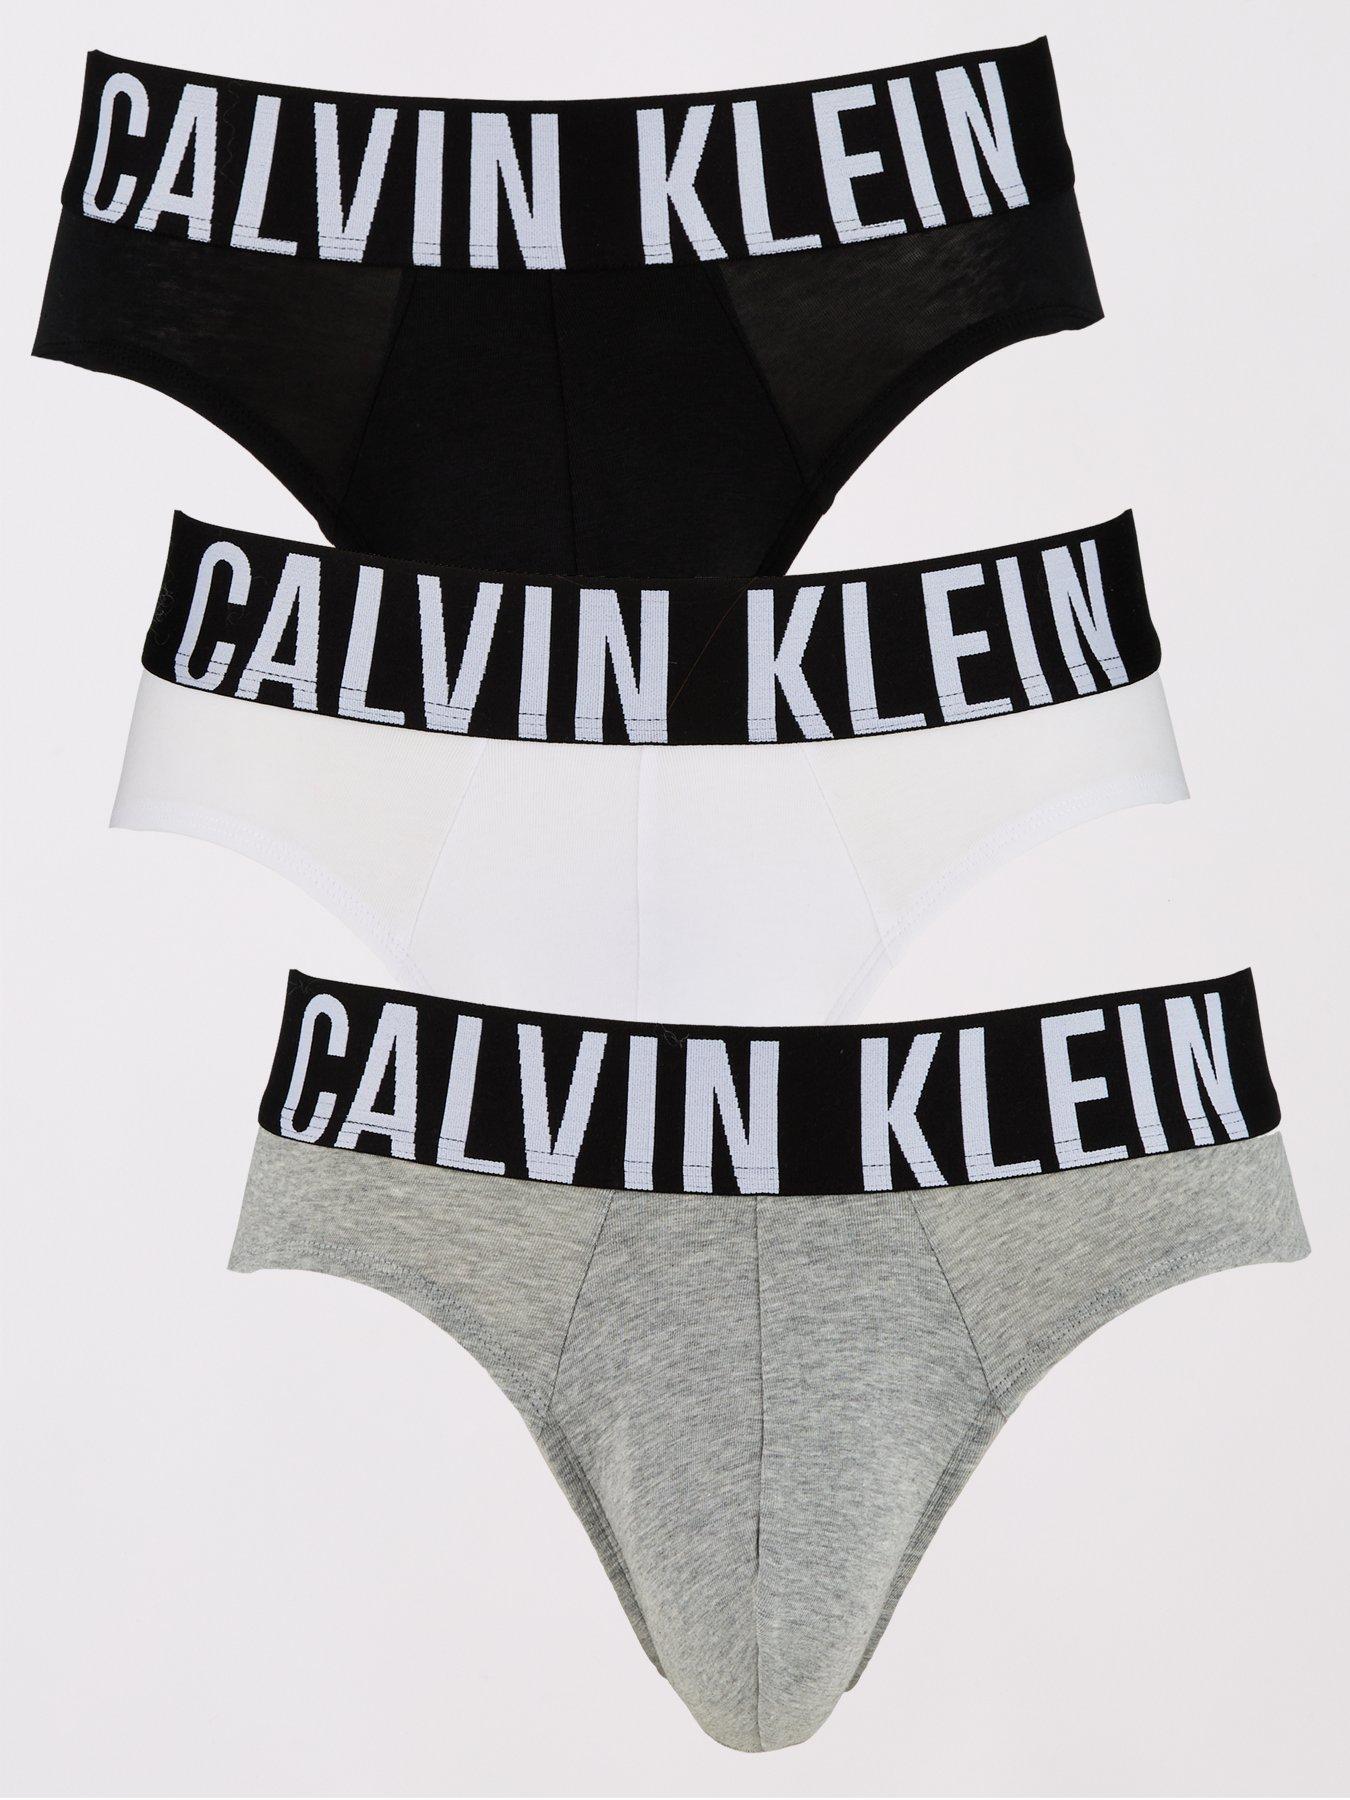 Calvin Klein Modern Cotton Stretch Plus Boxer Briefs (3 Pack